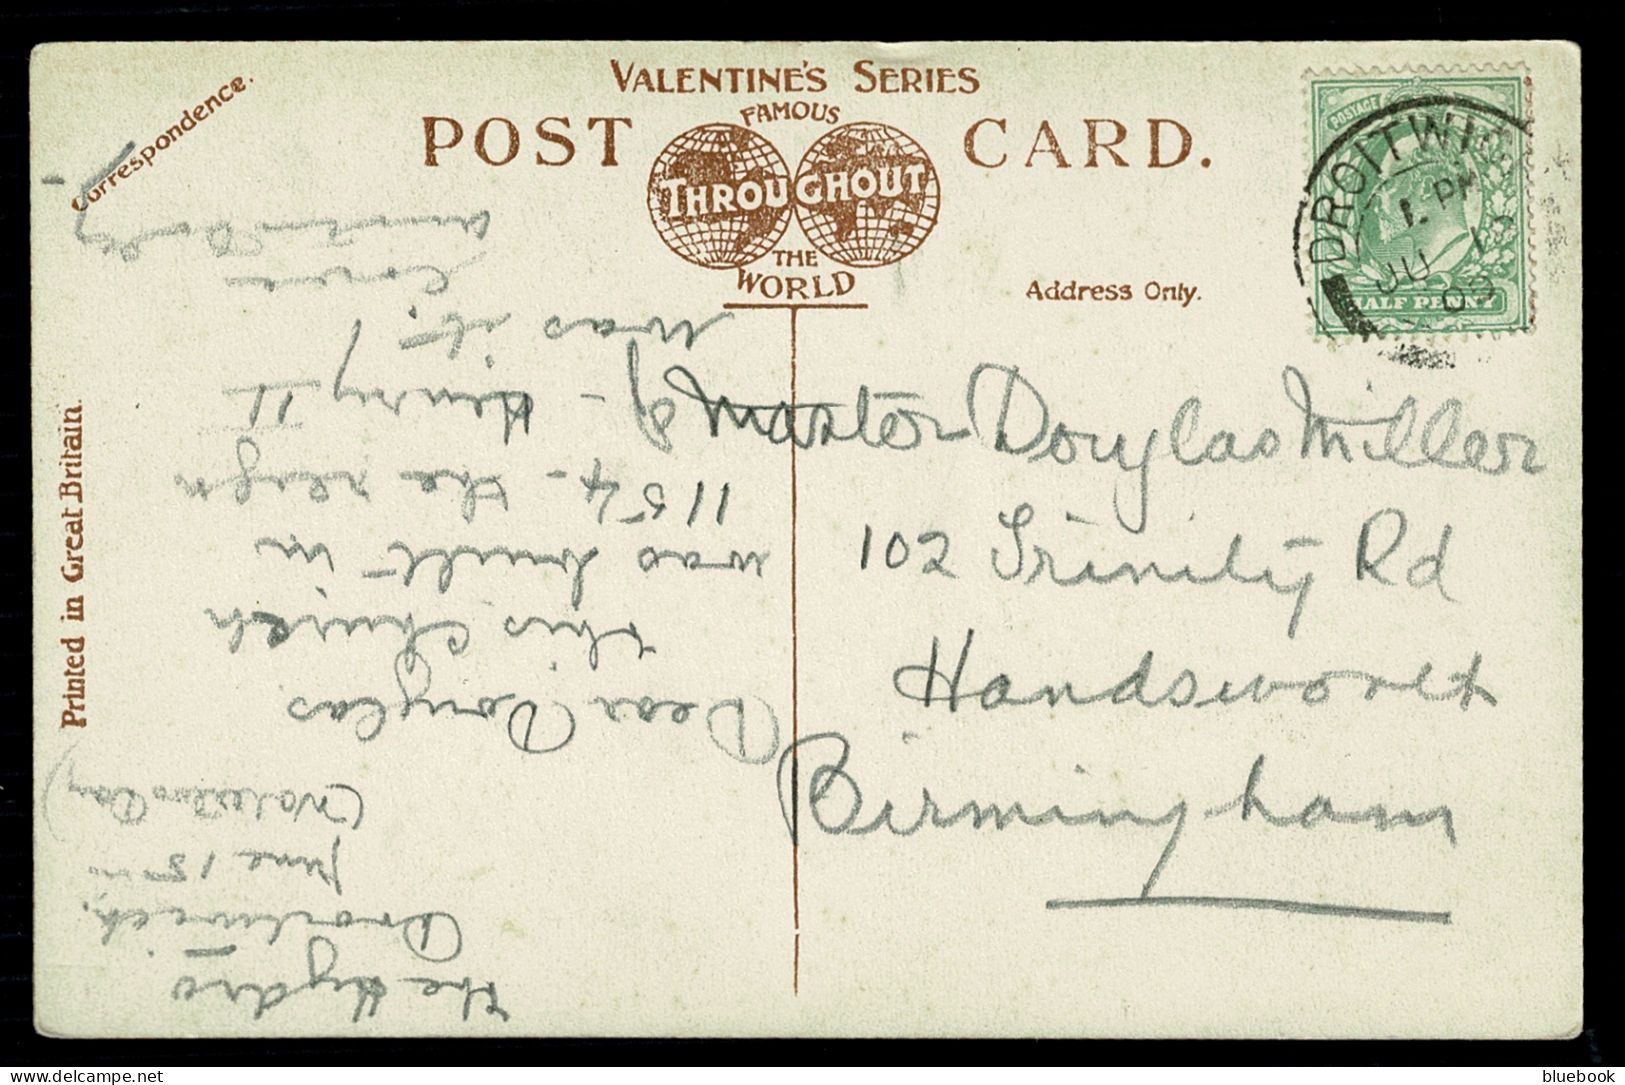 Ref 1623 - 1909 Postcard - Dodderhill Church Droitwich - Worcestershire - Sonstige & Ohne Zuordnung